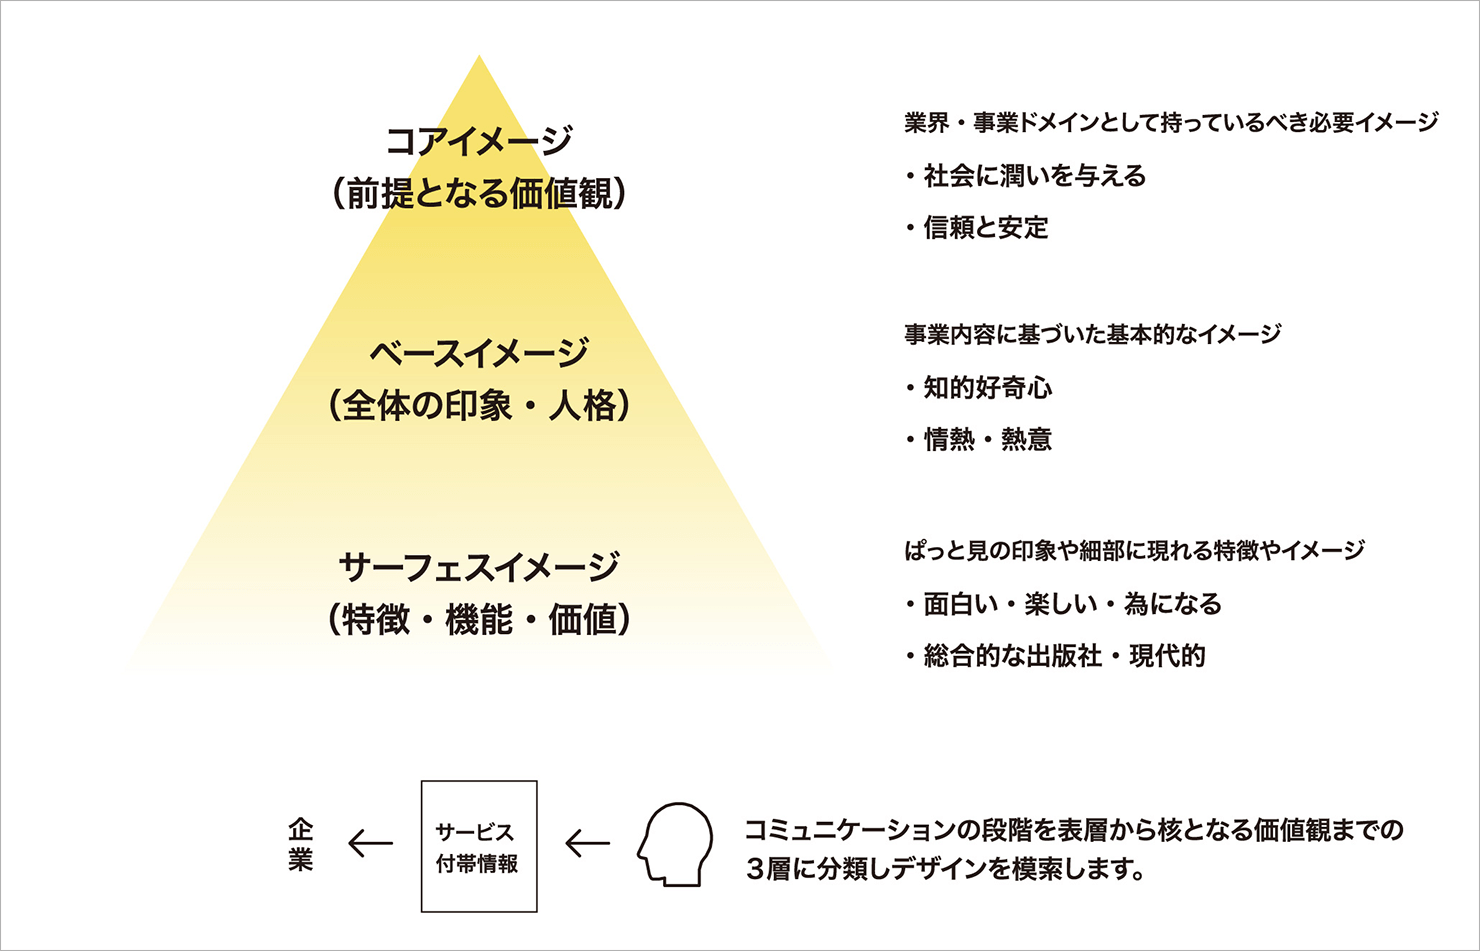 コミュニケーションの各階層に対し、上から具体的なイメージをピラミッド型に表した図